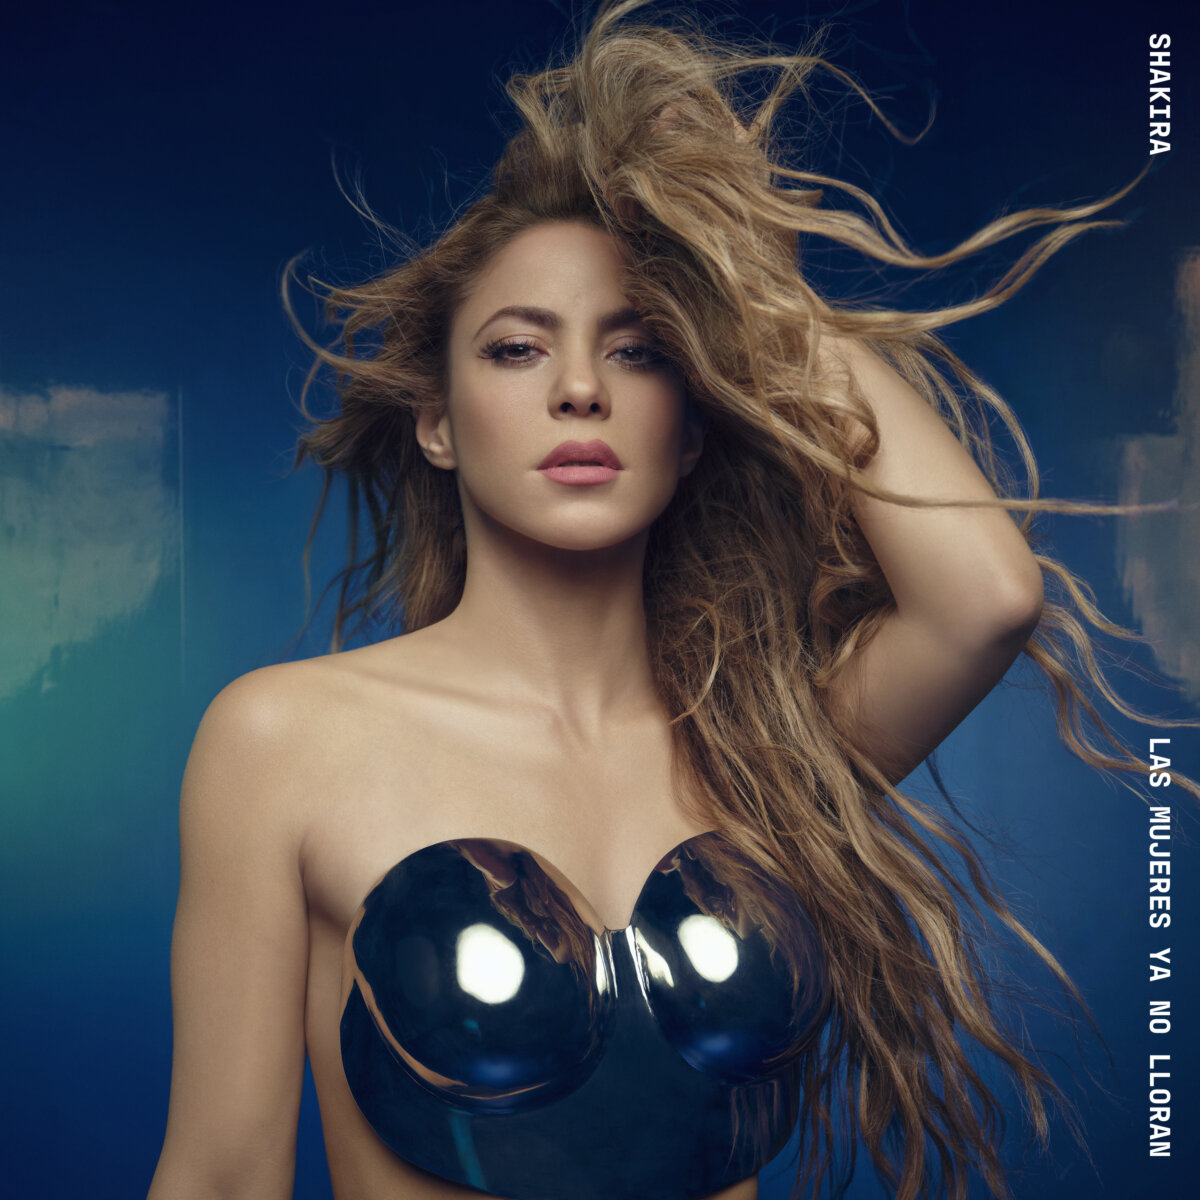 'Las mujeres ya no lloran': Shakira anuncia nuevo álbum Shakira ha emocionado a sus fans tras anunciar su nuevo álbum 'Las mujeres ya no lloran', que estará disponible a partir del 22 de marzo. Será el duodécimo disco de estudio de su exitosa carrera.